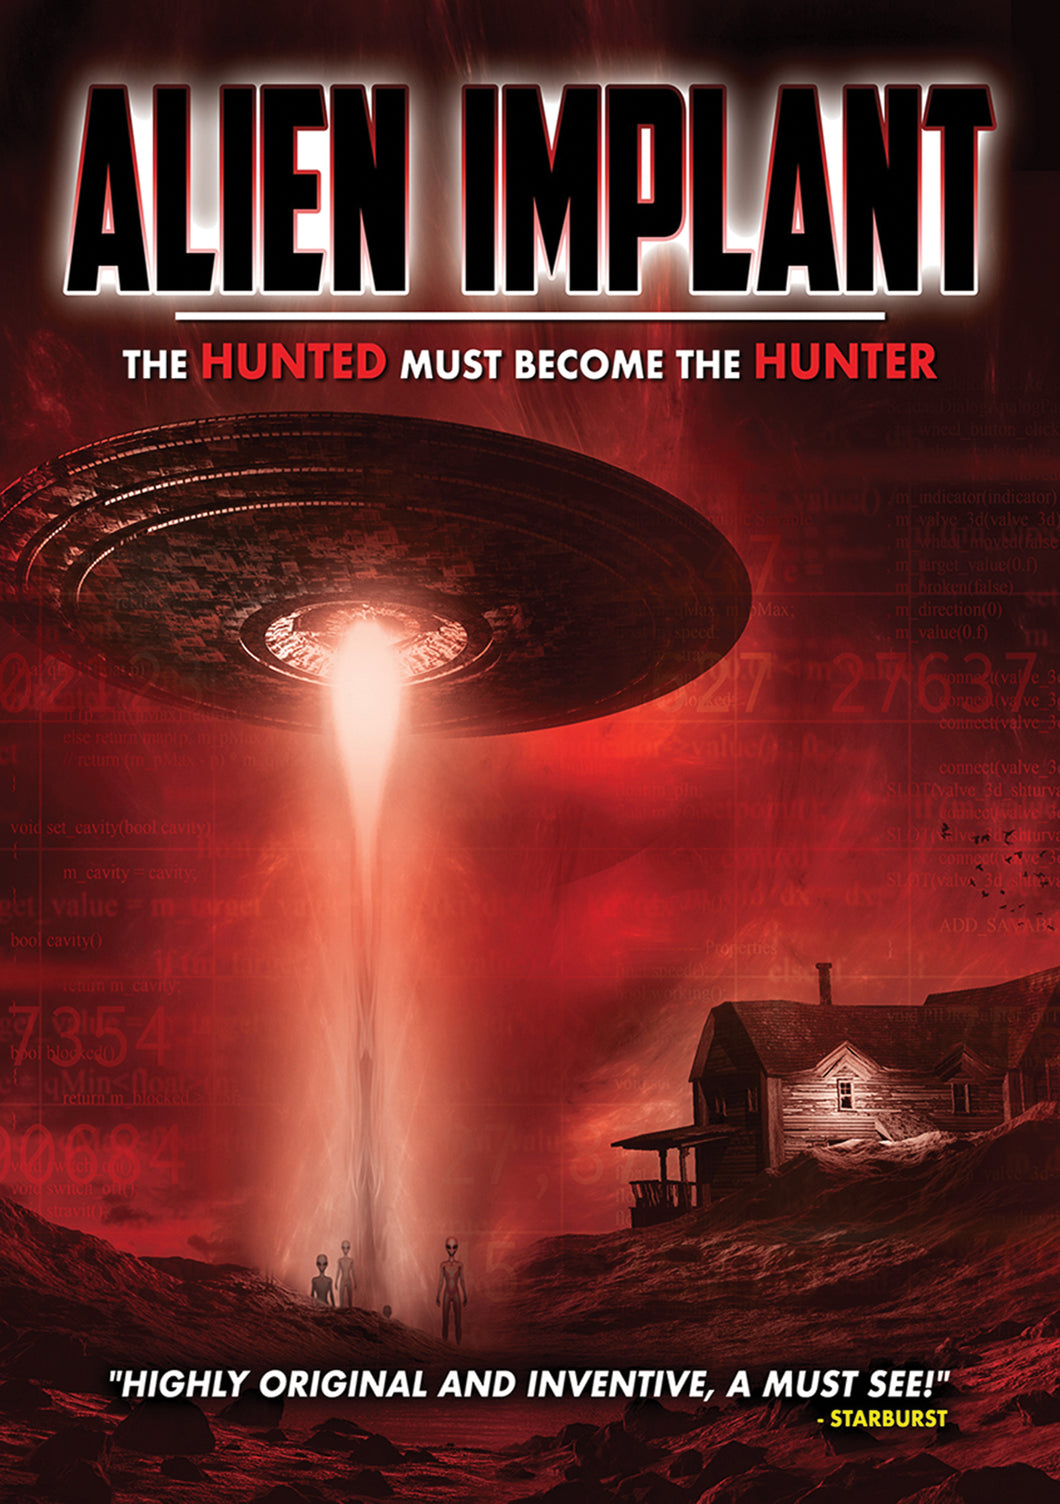 Alien Implant (DVD)